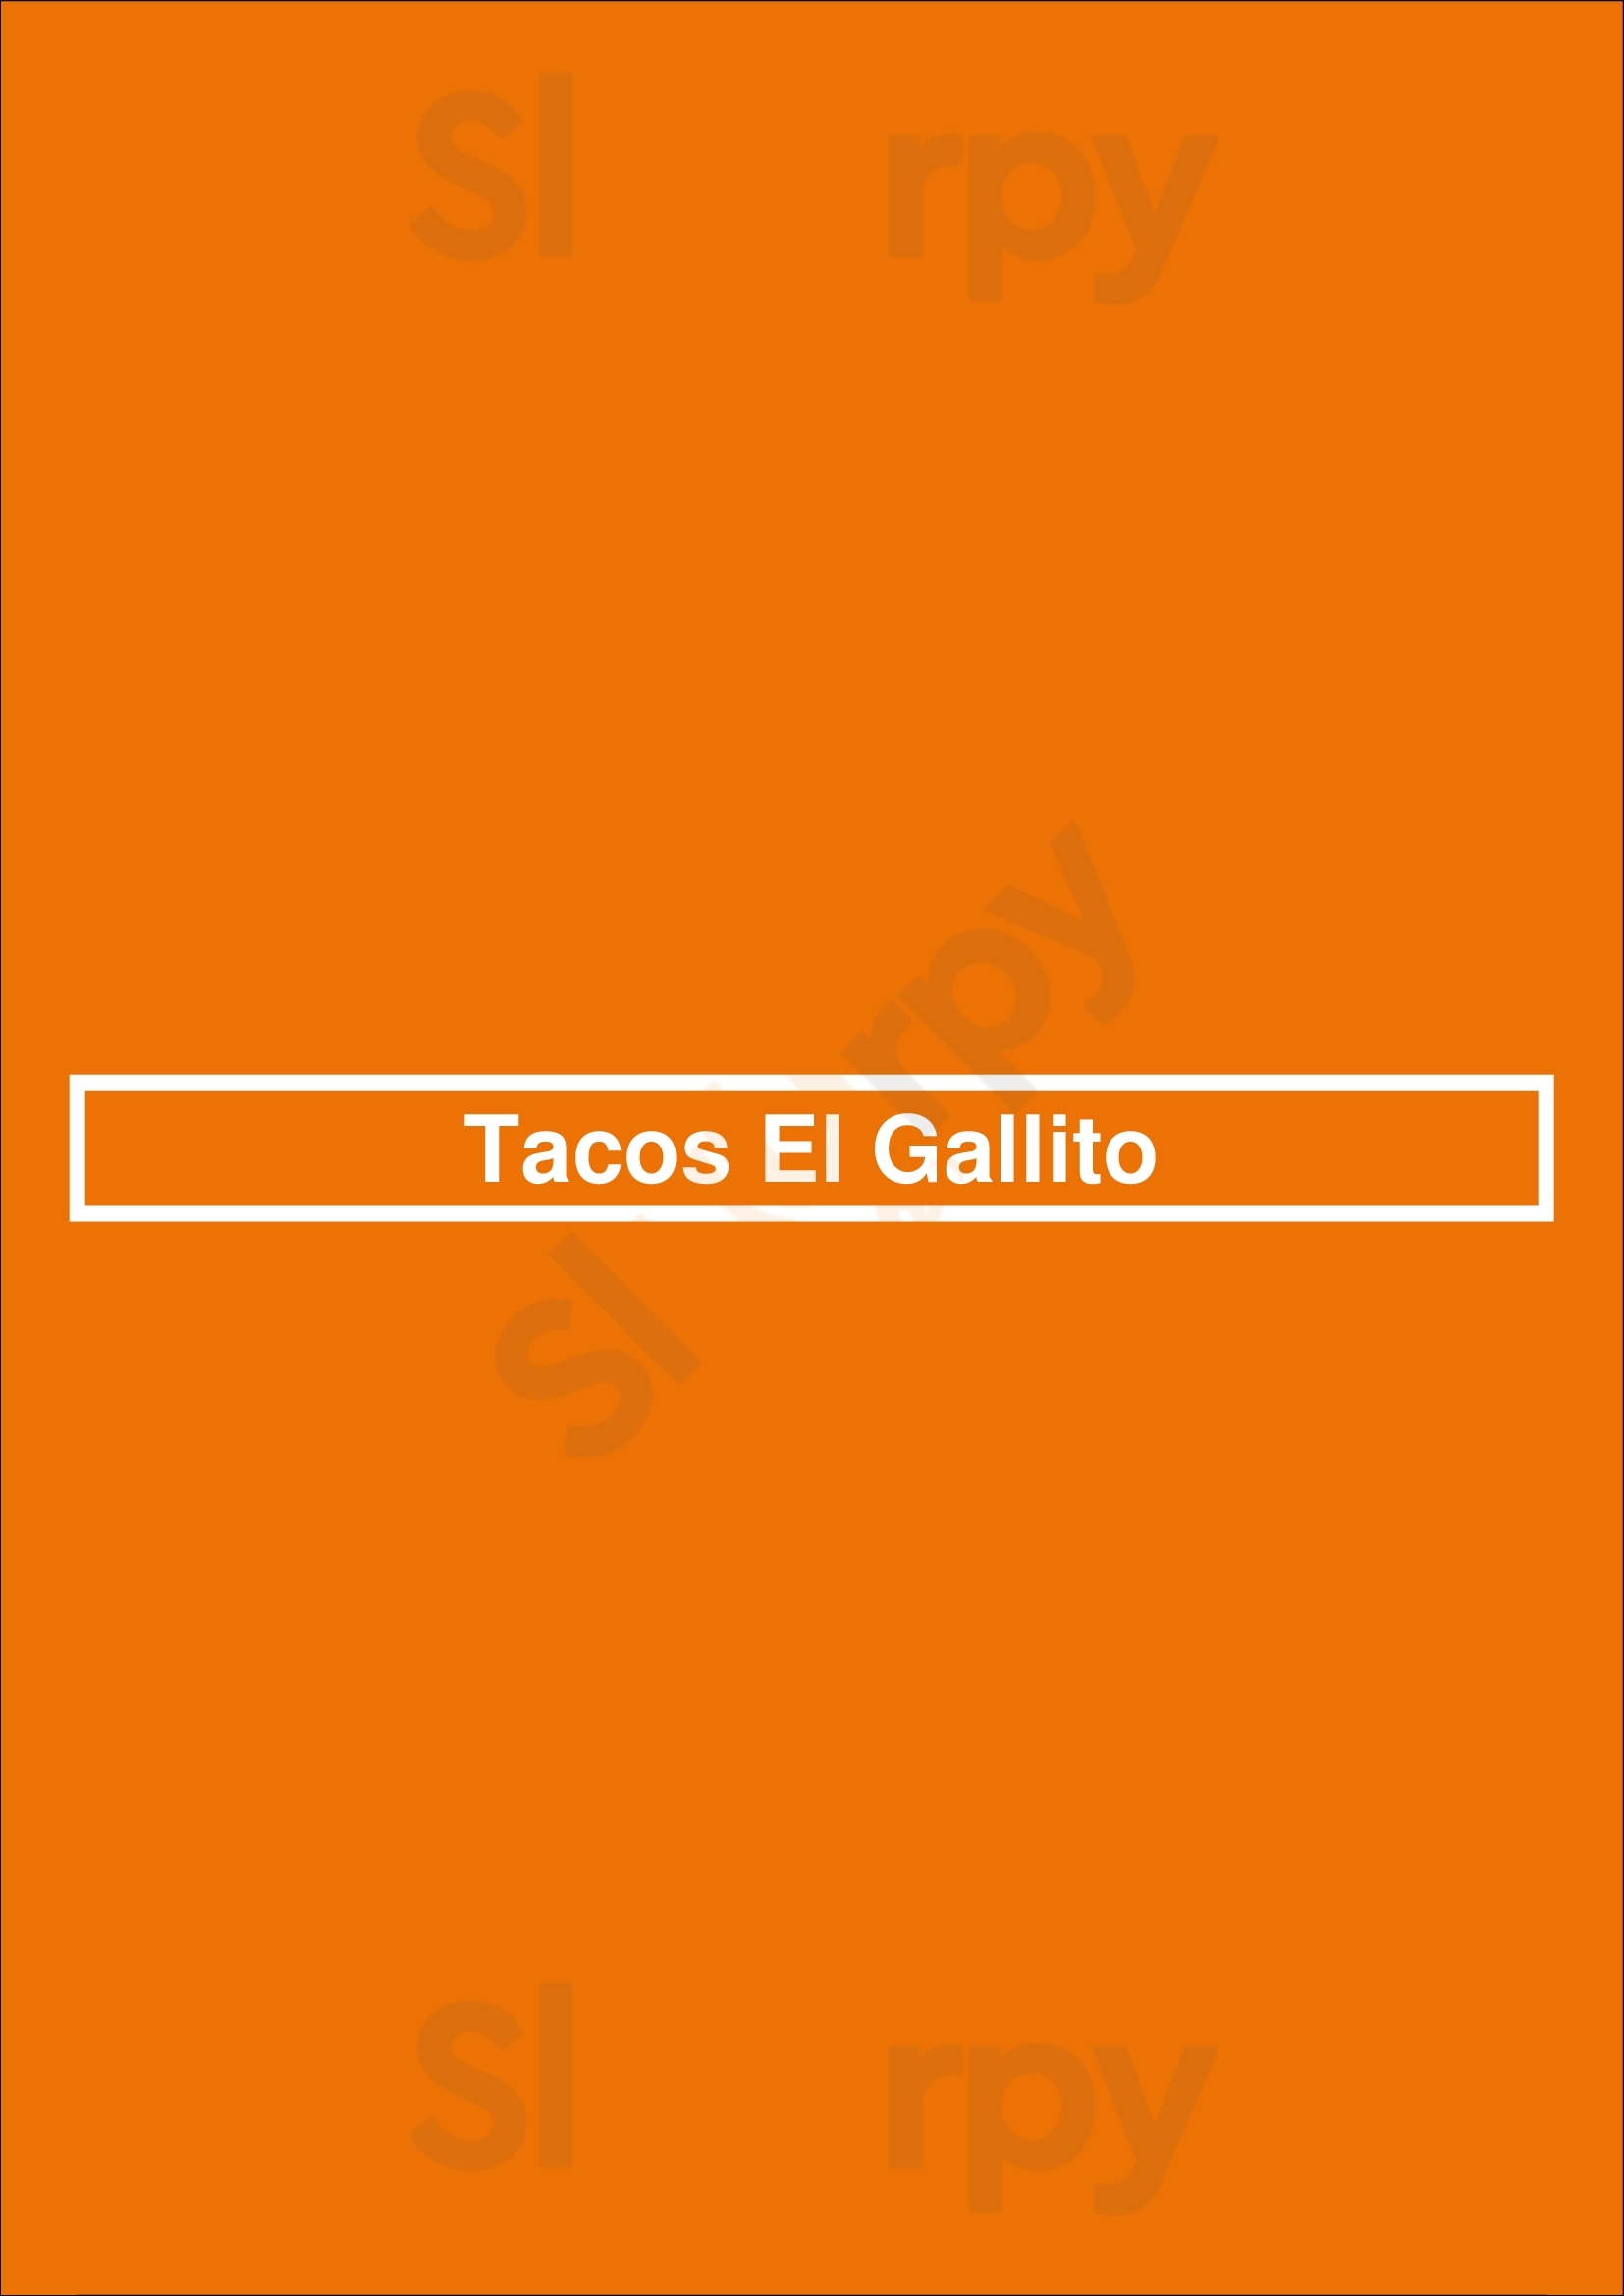 Tacos El Gallito Los Angeles Menu - 1